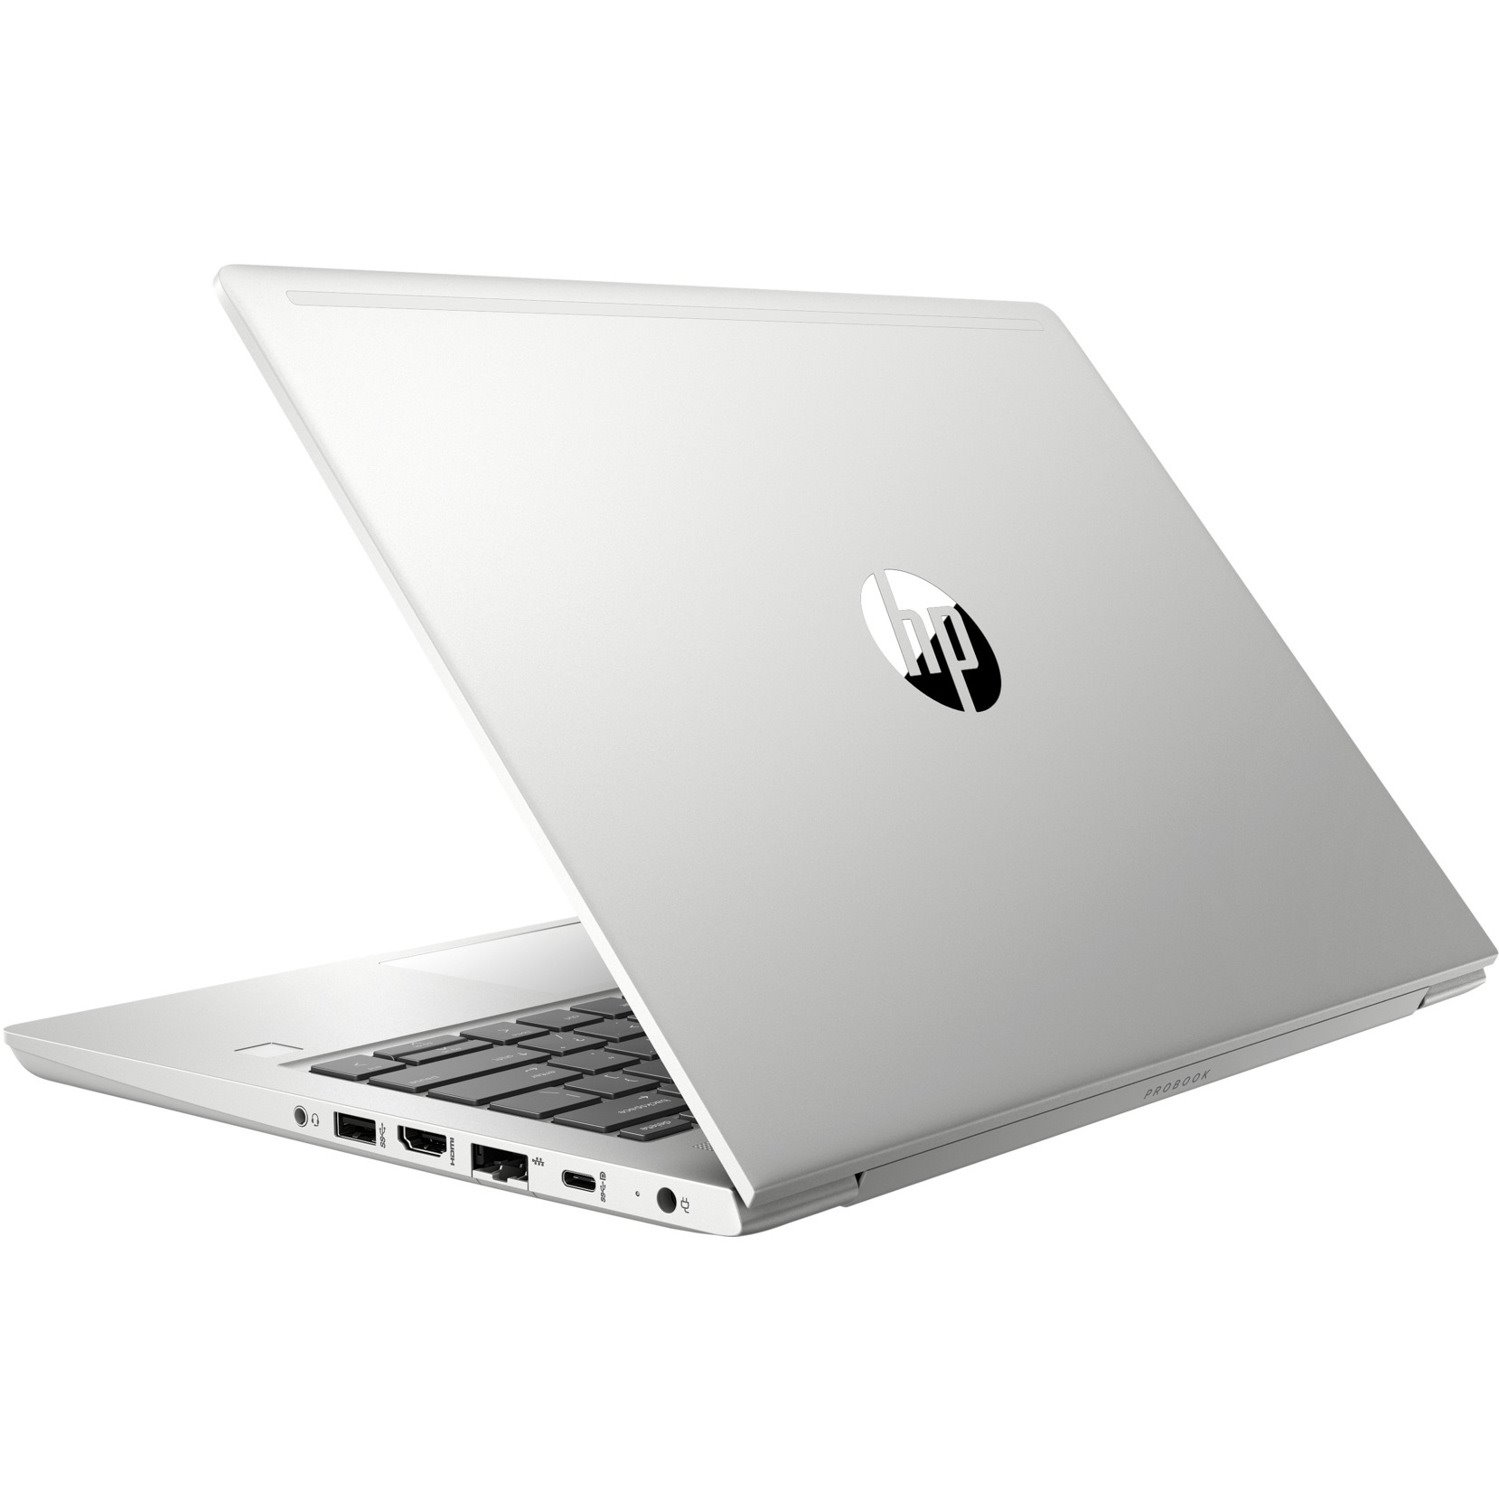 HP ProBook 430 G7 13.3" Notebook - Full HD - 1920 x 1080 - Intel Core i7 10th Gen i7-10510U Quad-core (4 Core) 1.80 GHz - 8 GB Total RAM - 512 GB SSD - Pike Silver Aluminum